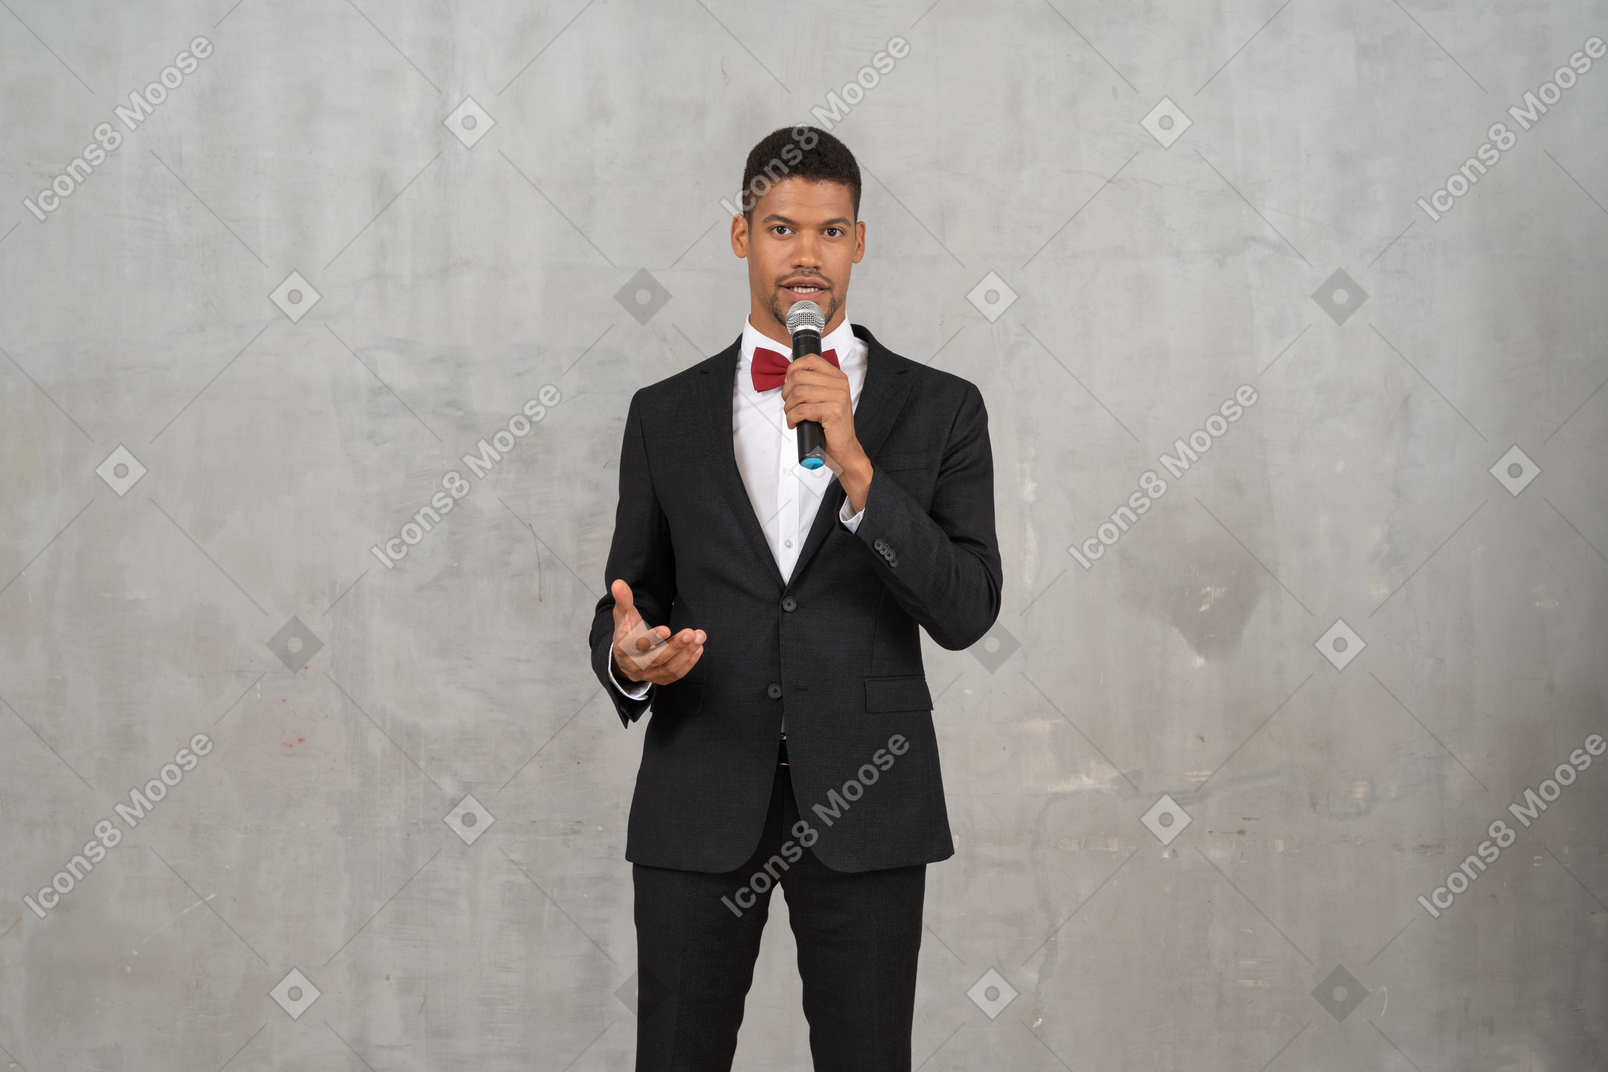 Hombre de traje negro hablando por el micrófono